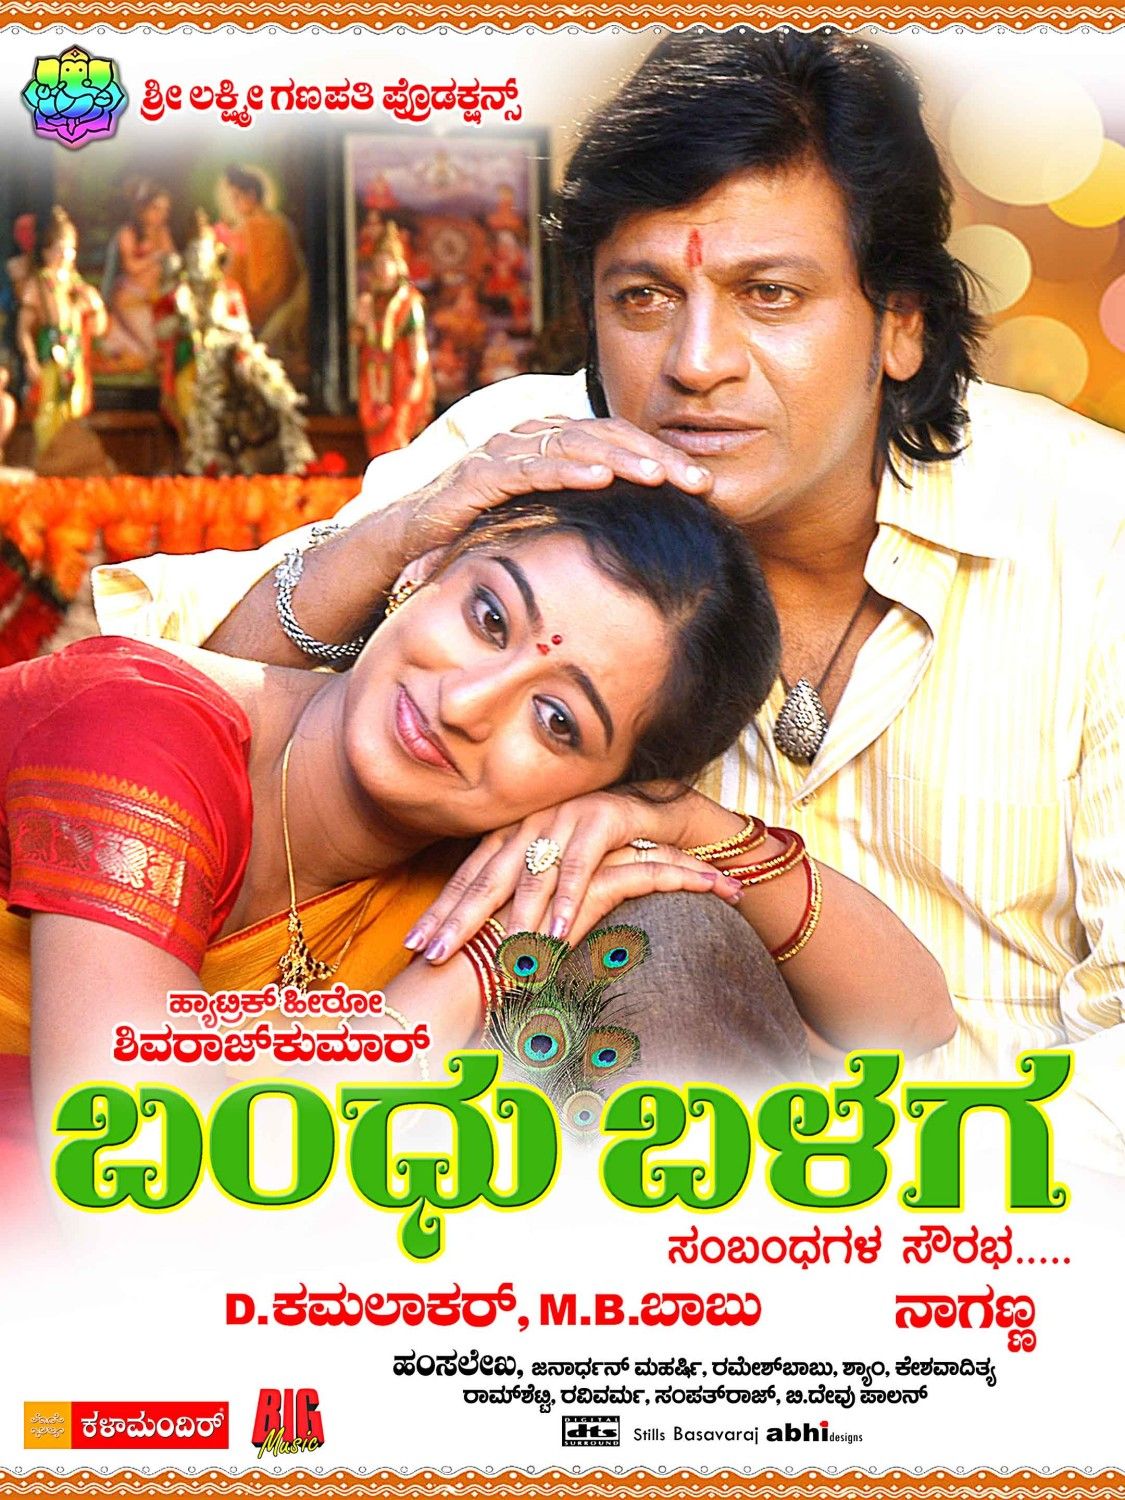 Extra Large Movie Poster Image for Bandu Balaga (#7 of 11)